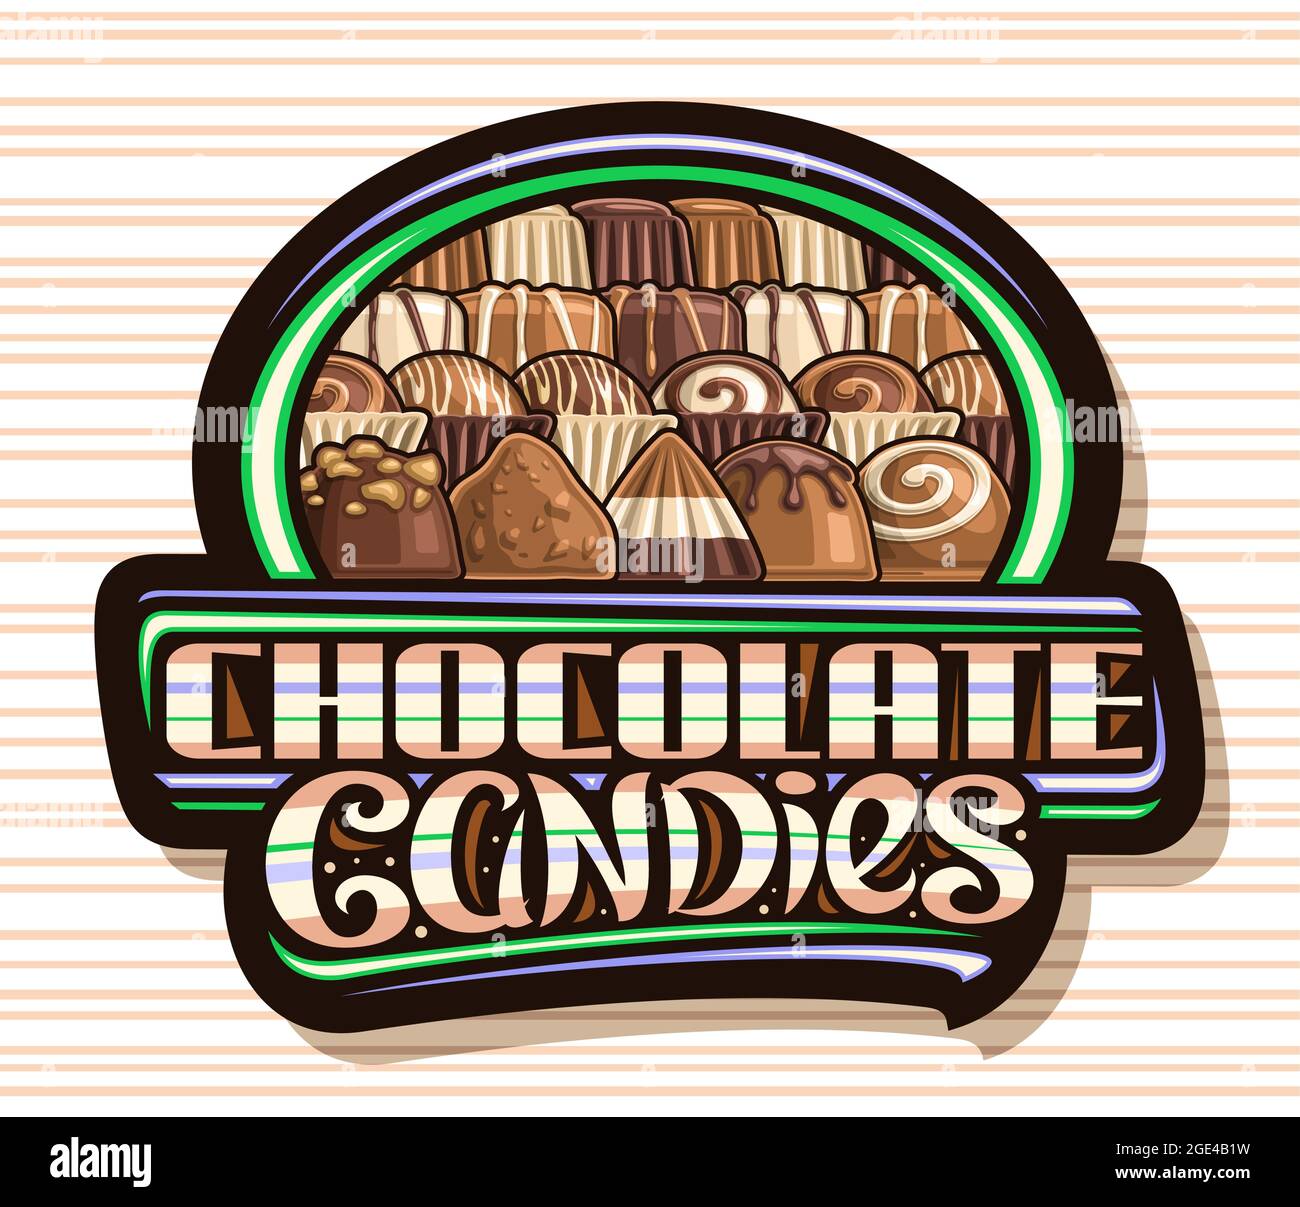 Logo vectoriel pour bonbons au chocolat, panneau d'affichage avec illustration de différentes pralines au chocolat et de délicieux bonbons dans une rangée, inscription unique au pinceau pour St Illustration de Vecteur